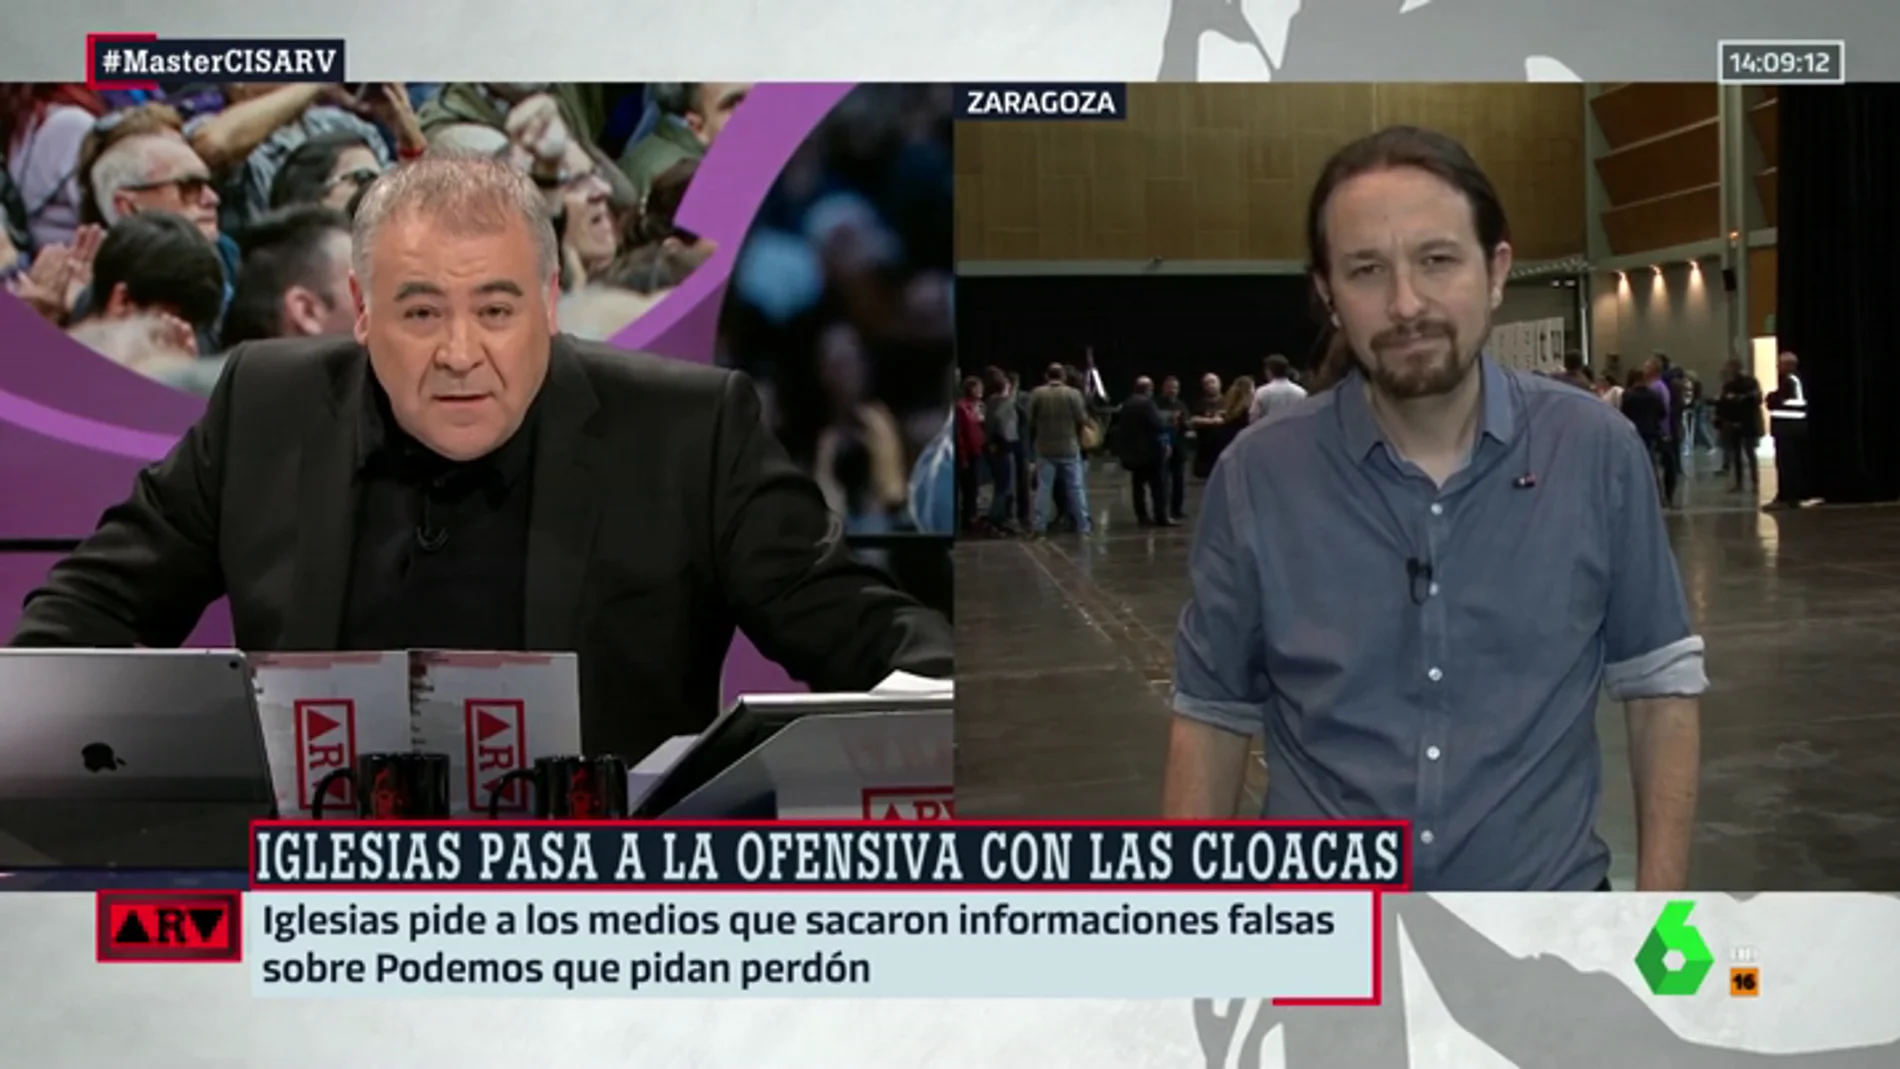 El plan de Pablo Iglesias para liderar los medios de izquierdas: Ferreras es solo el comienzo